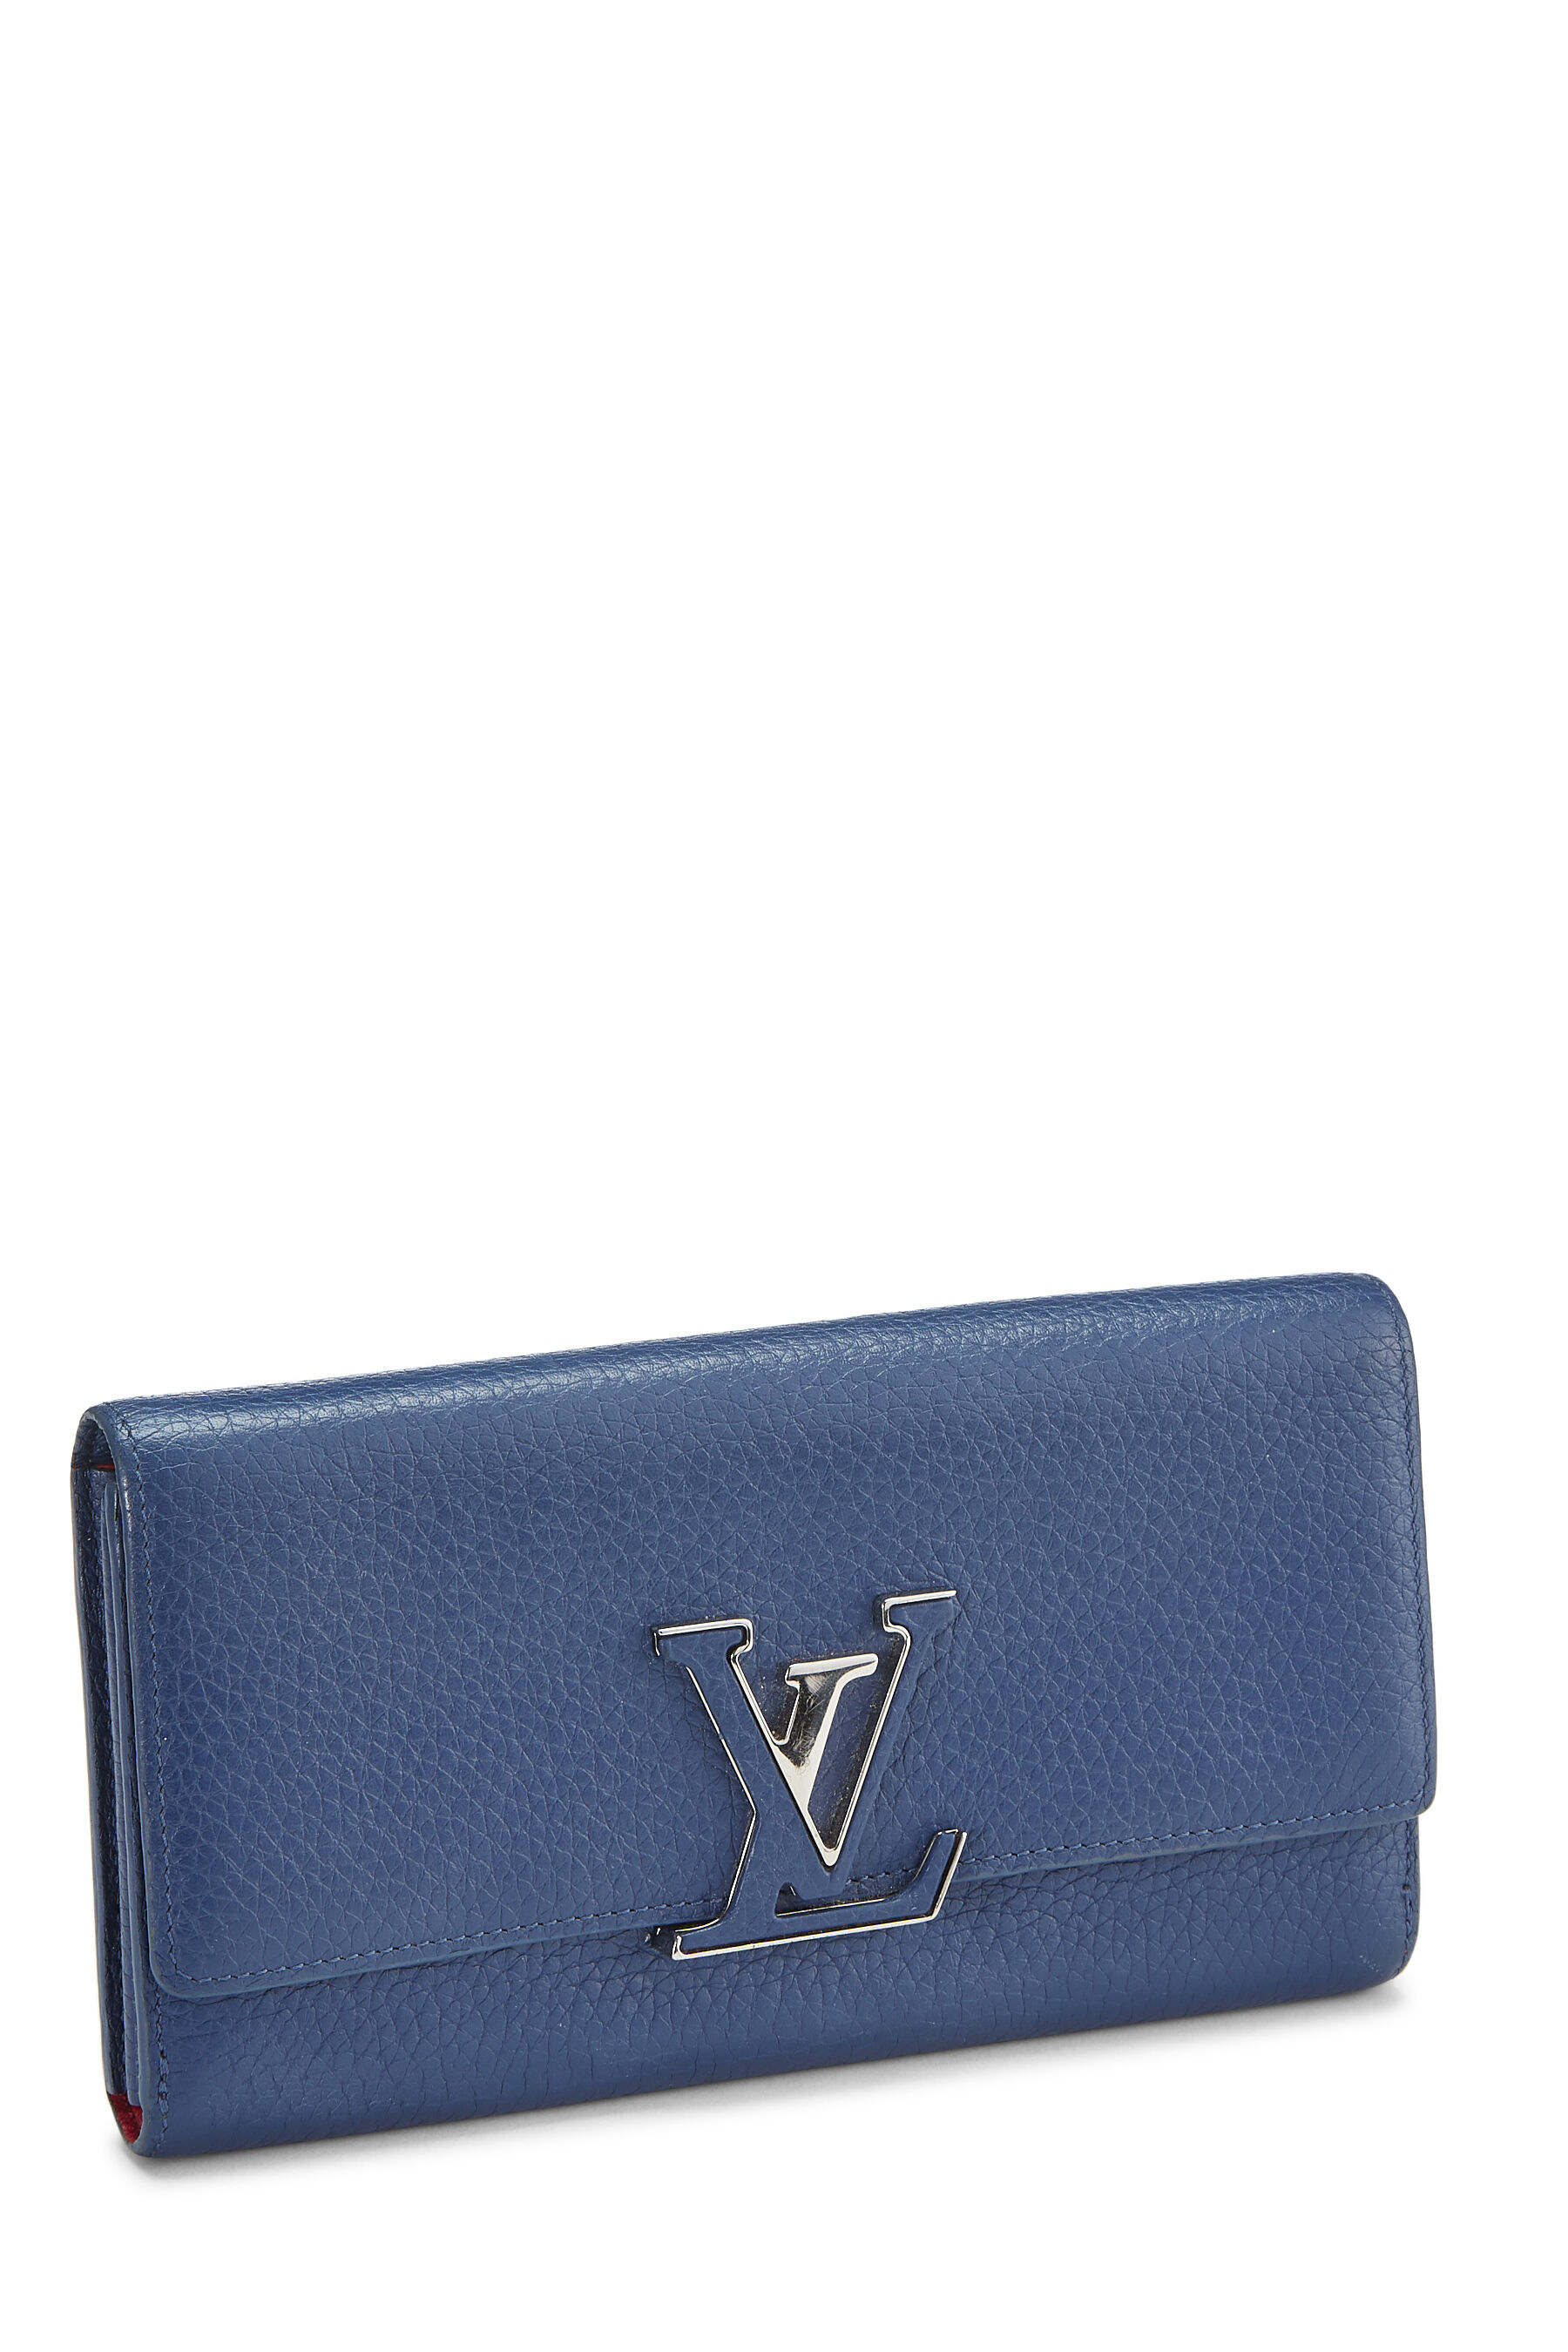 Authentic Louis Vuitton Black / Pink CAPUCINES Long Wallet, Taurillon  Leather